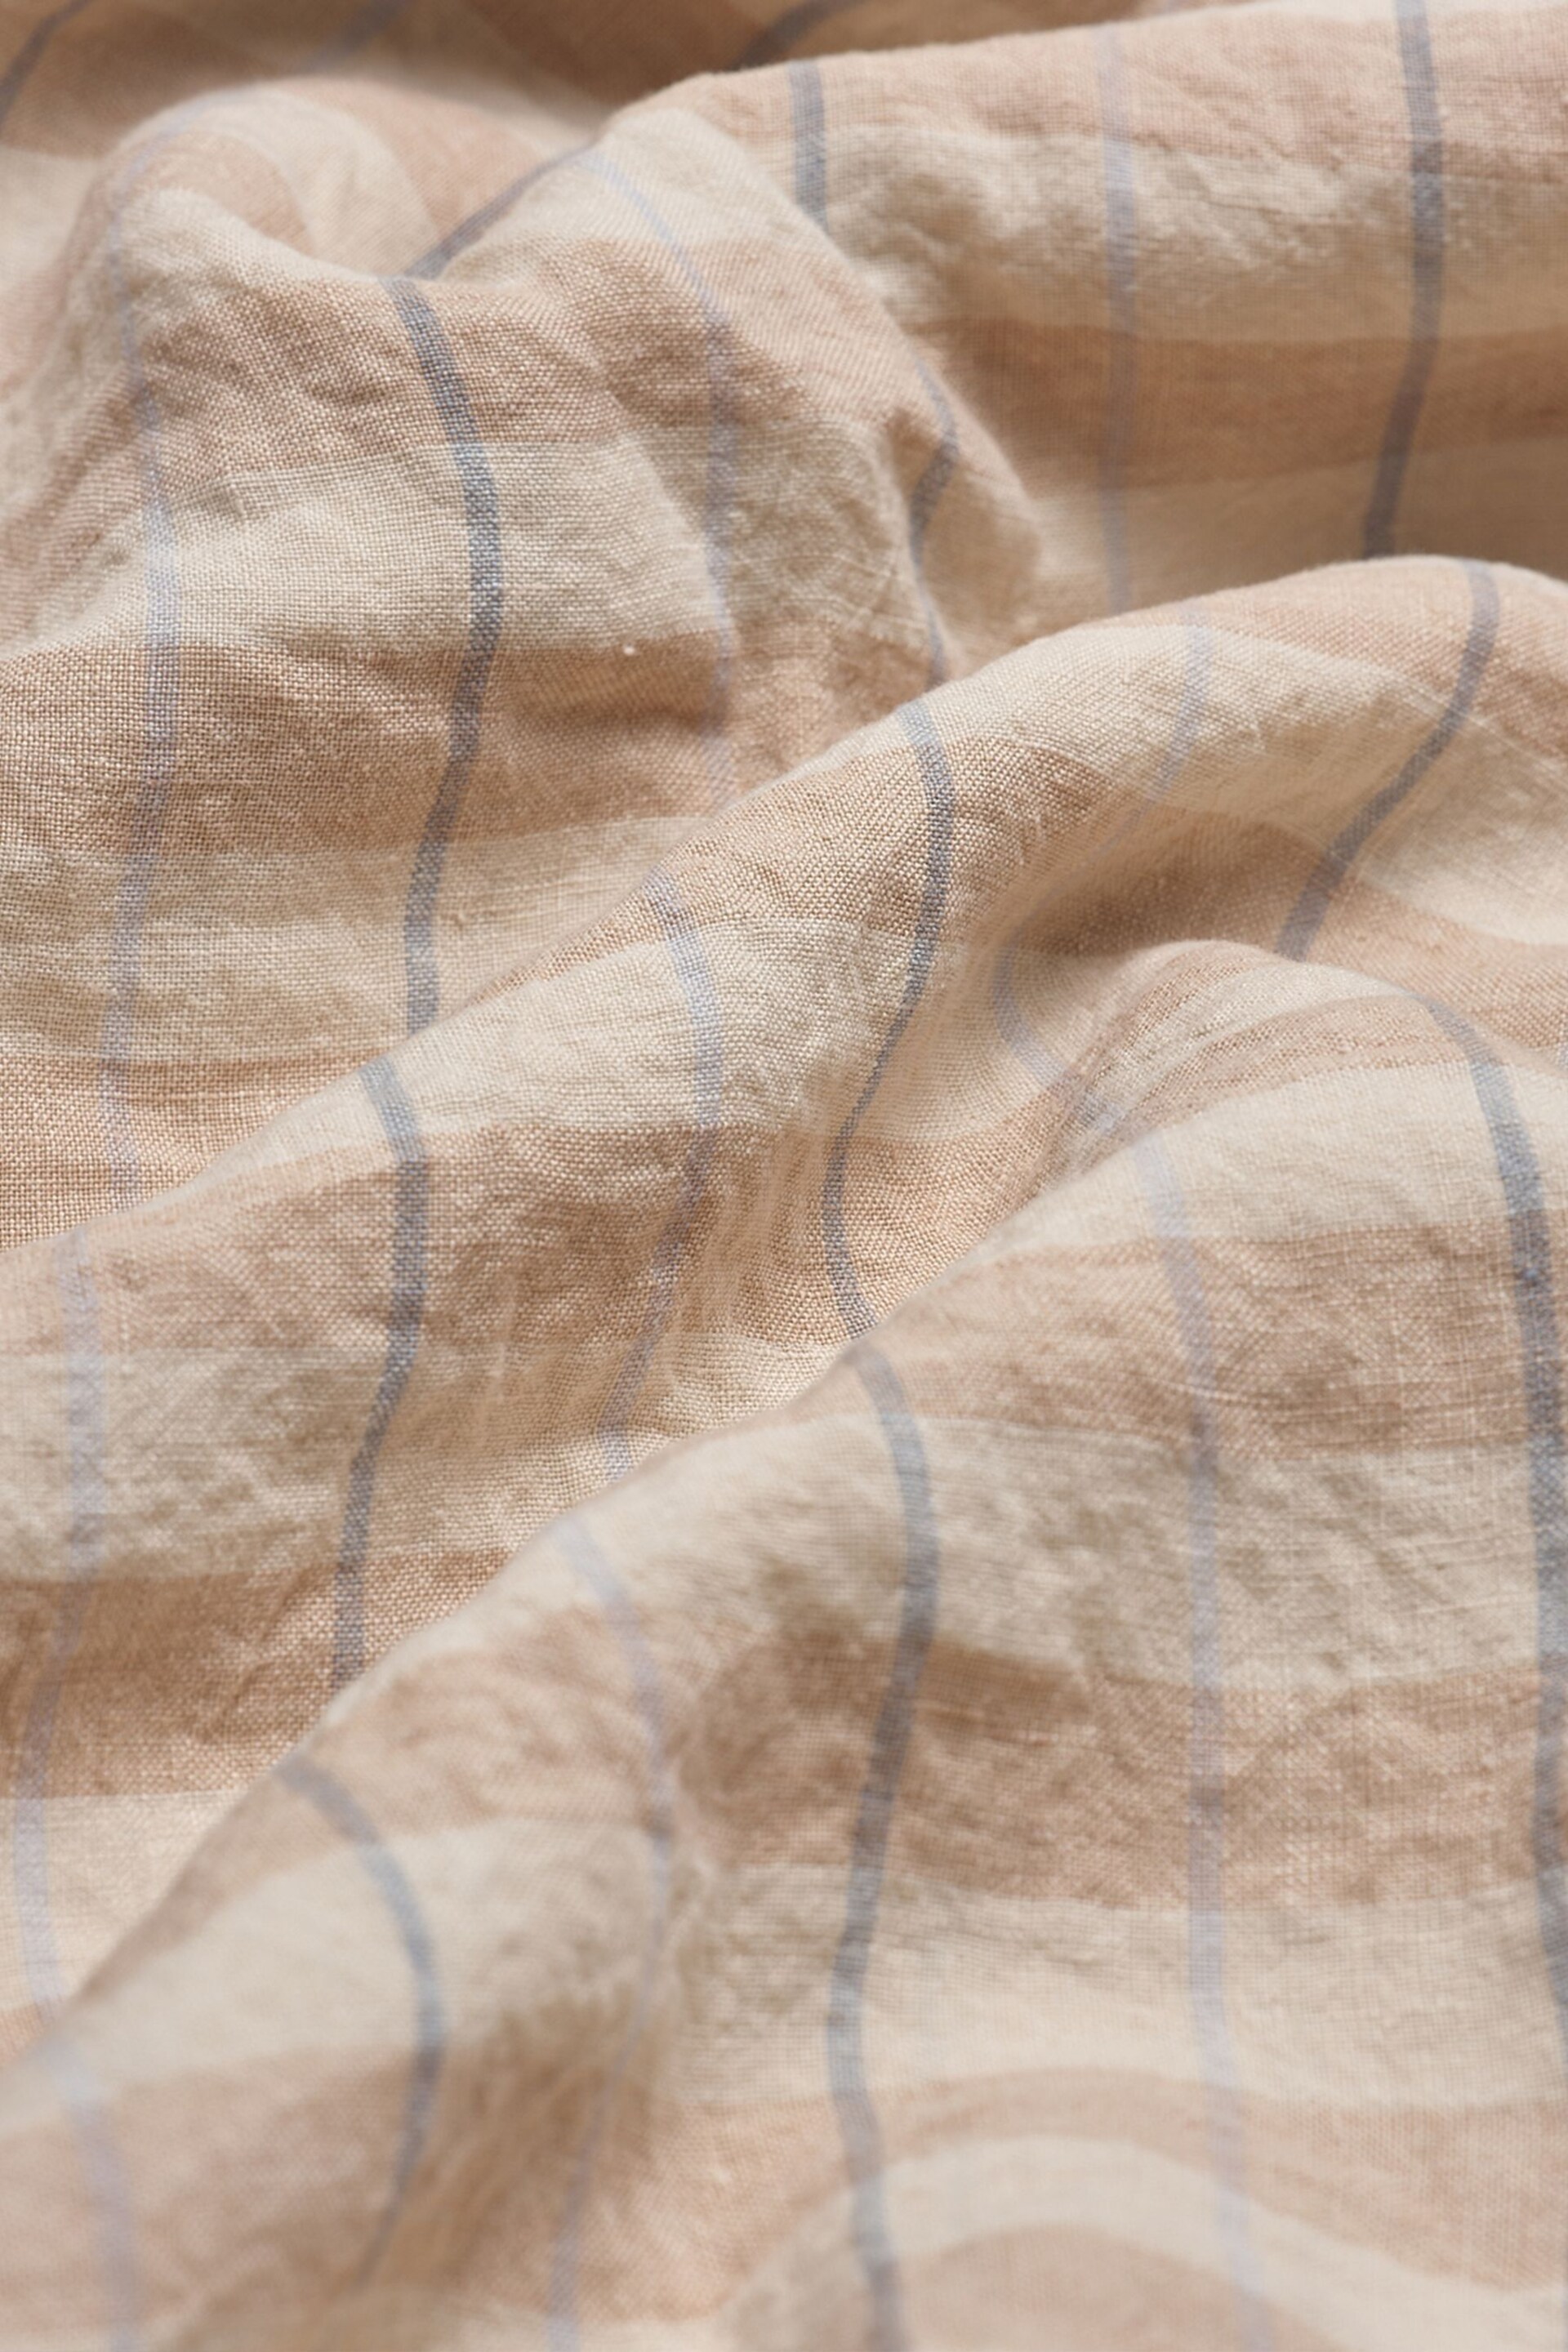 Piglet in Bed Cafe au Lait Check Stripe Linen Duvet Cover - Image 2 of 3